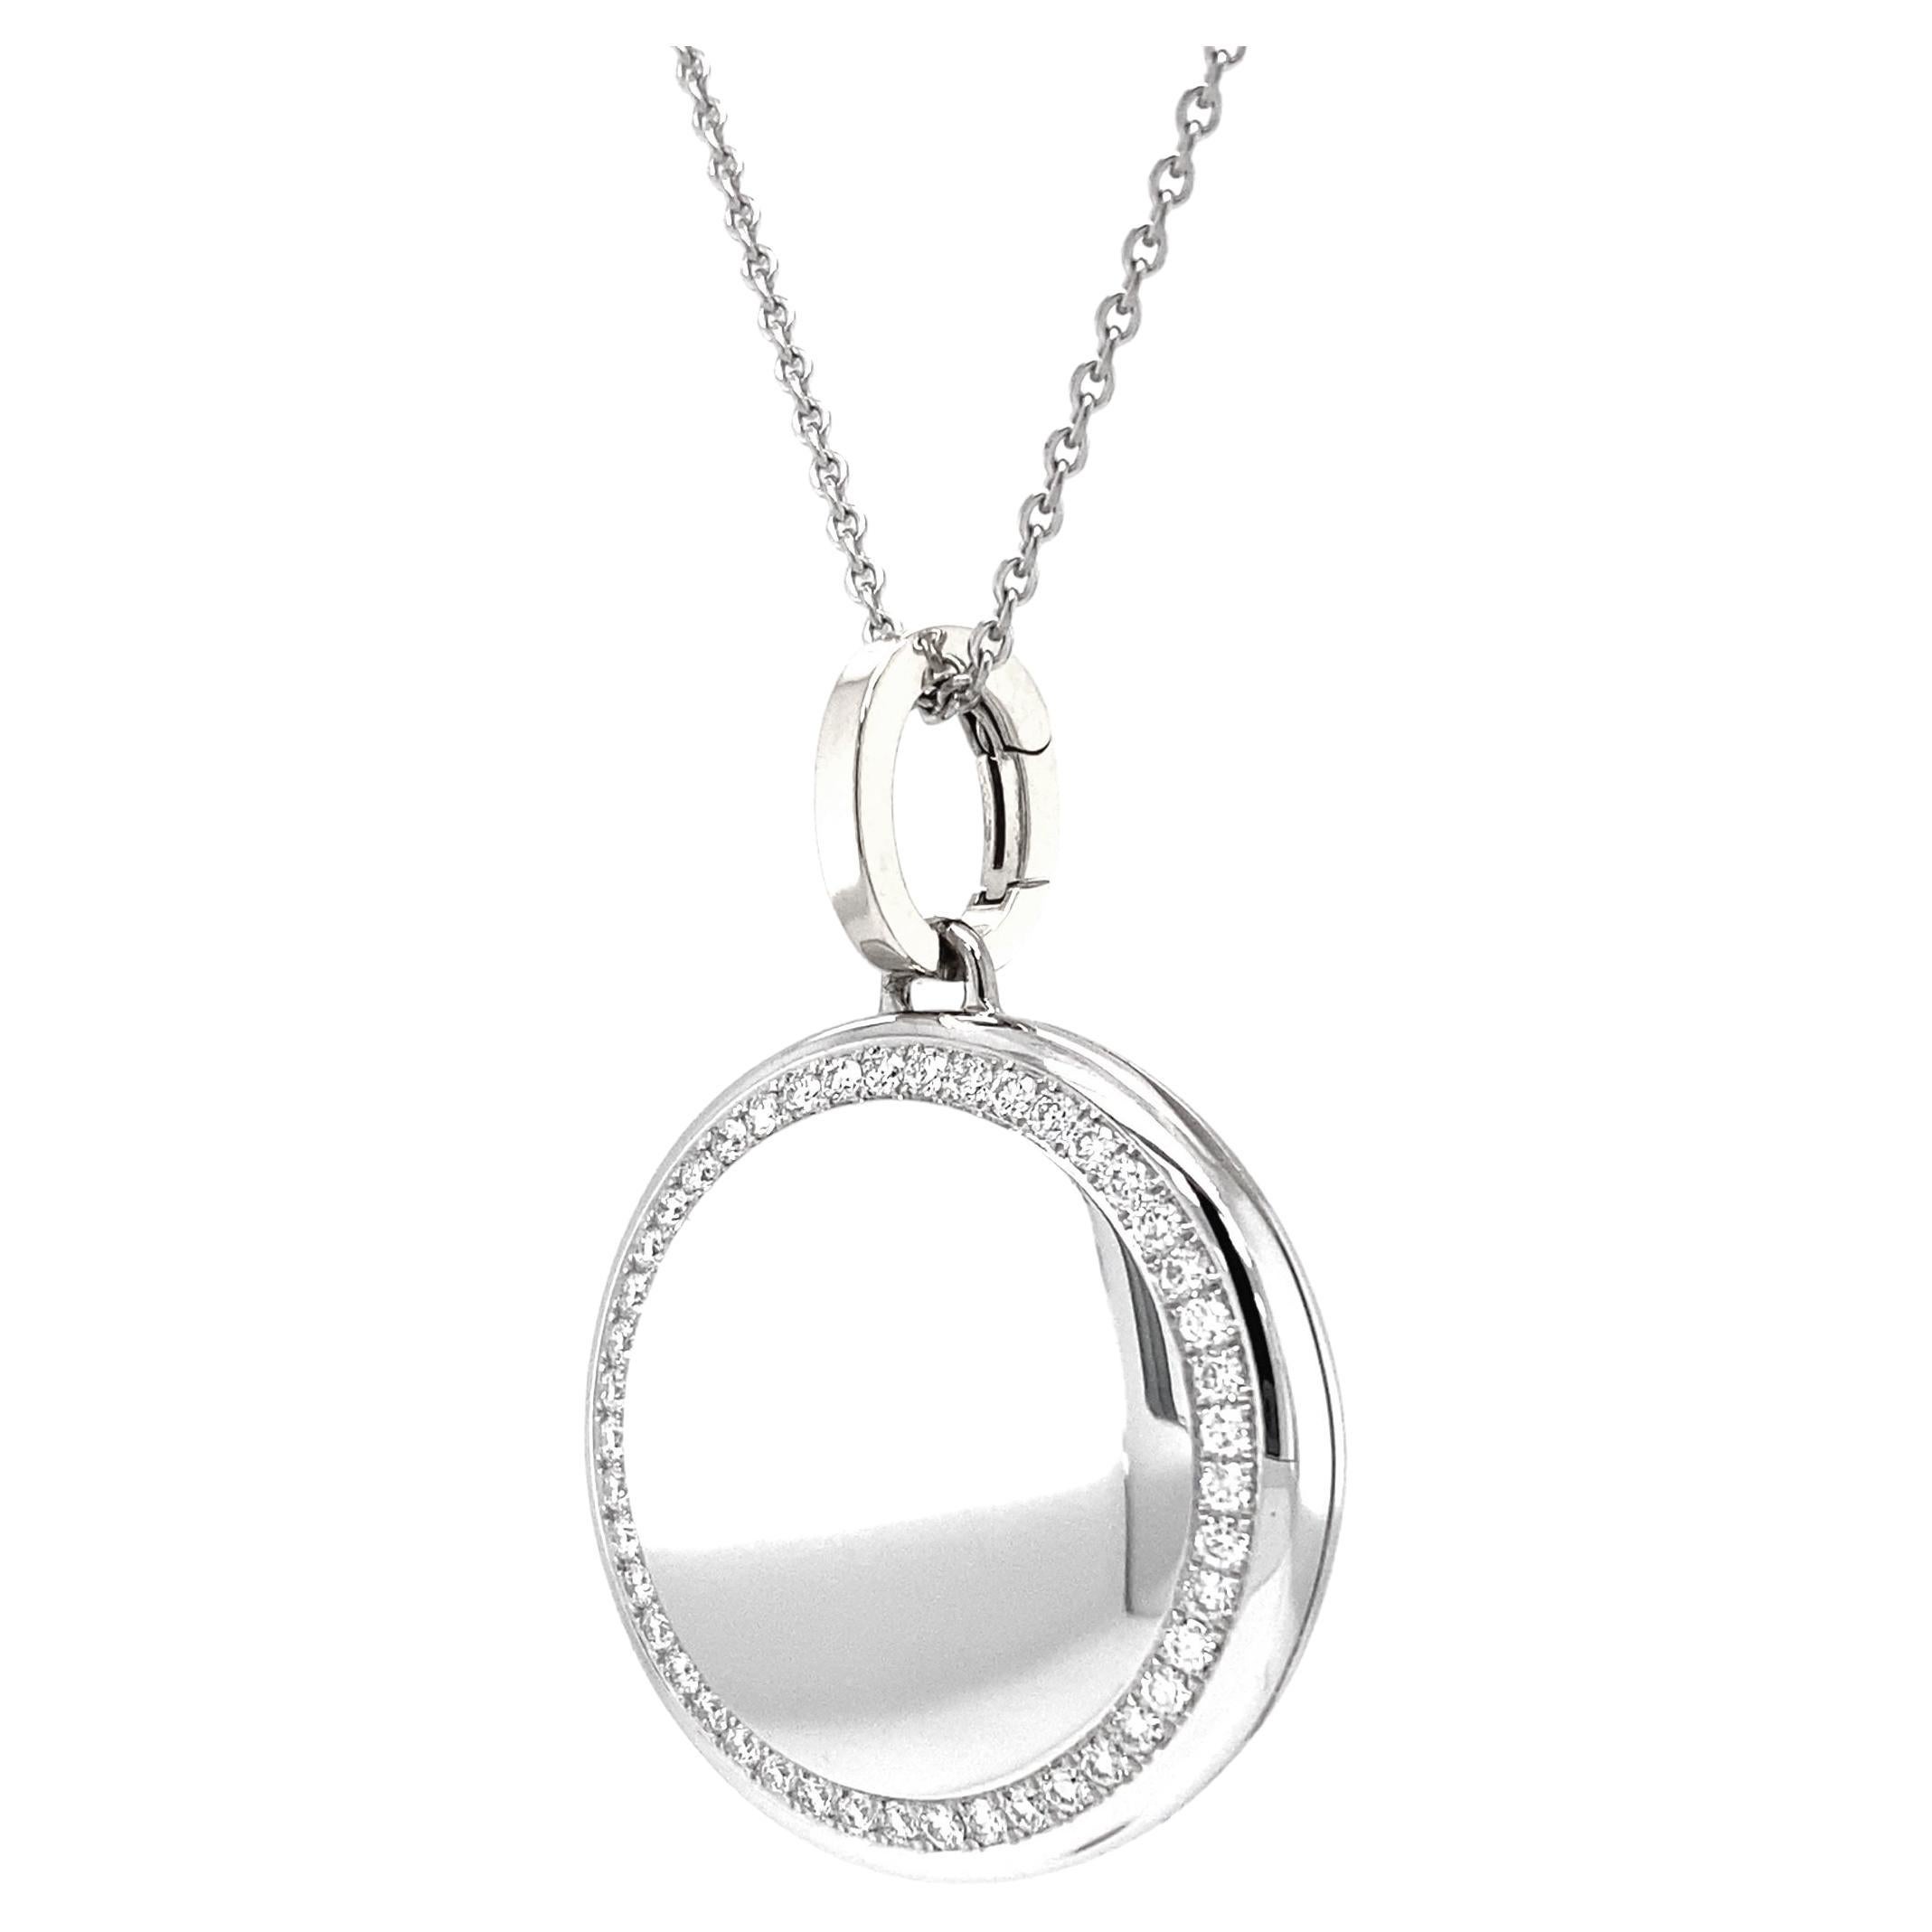 Collier pendentif médaillon rond en or blanc 18 carats, 45 diamants 0,5 carat, diamètre 26,0 mm